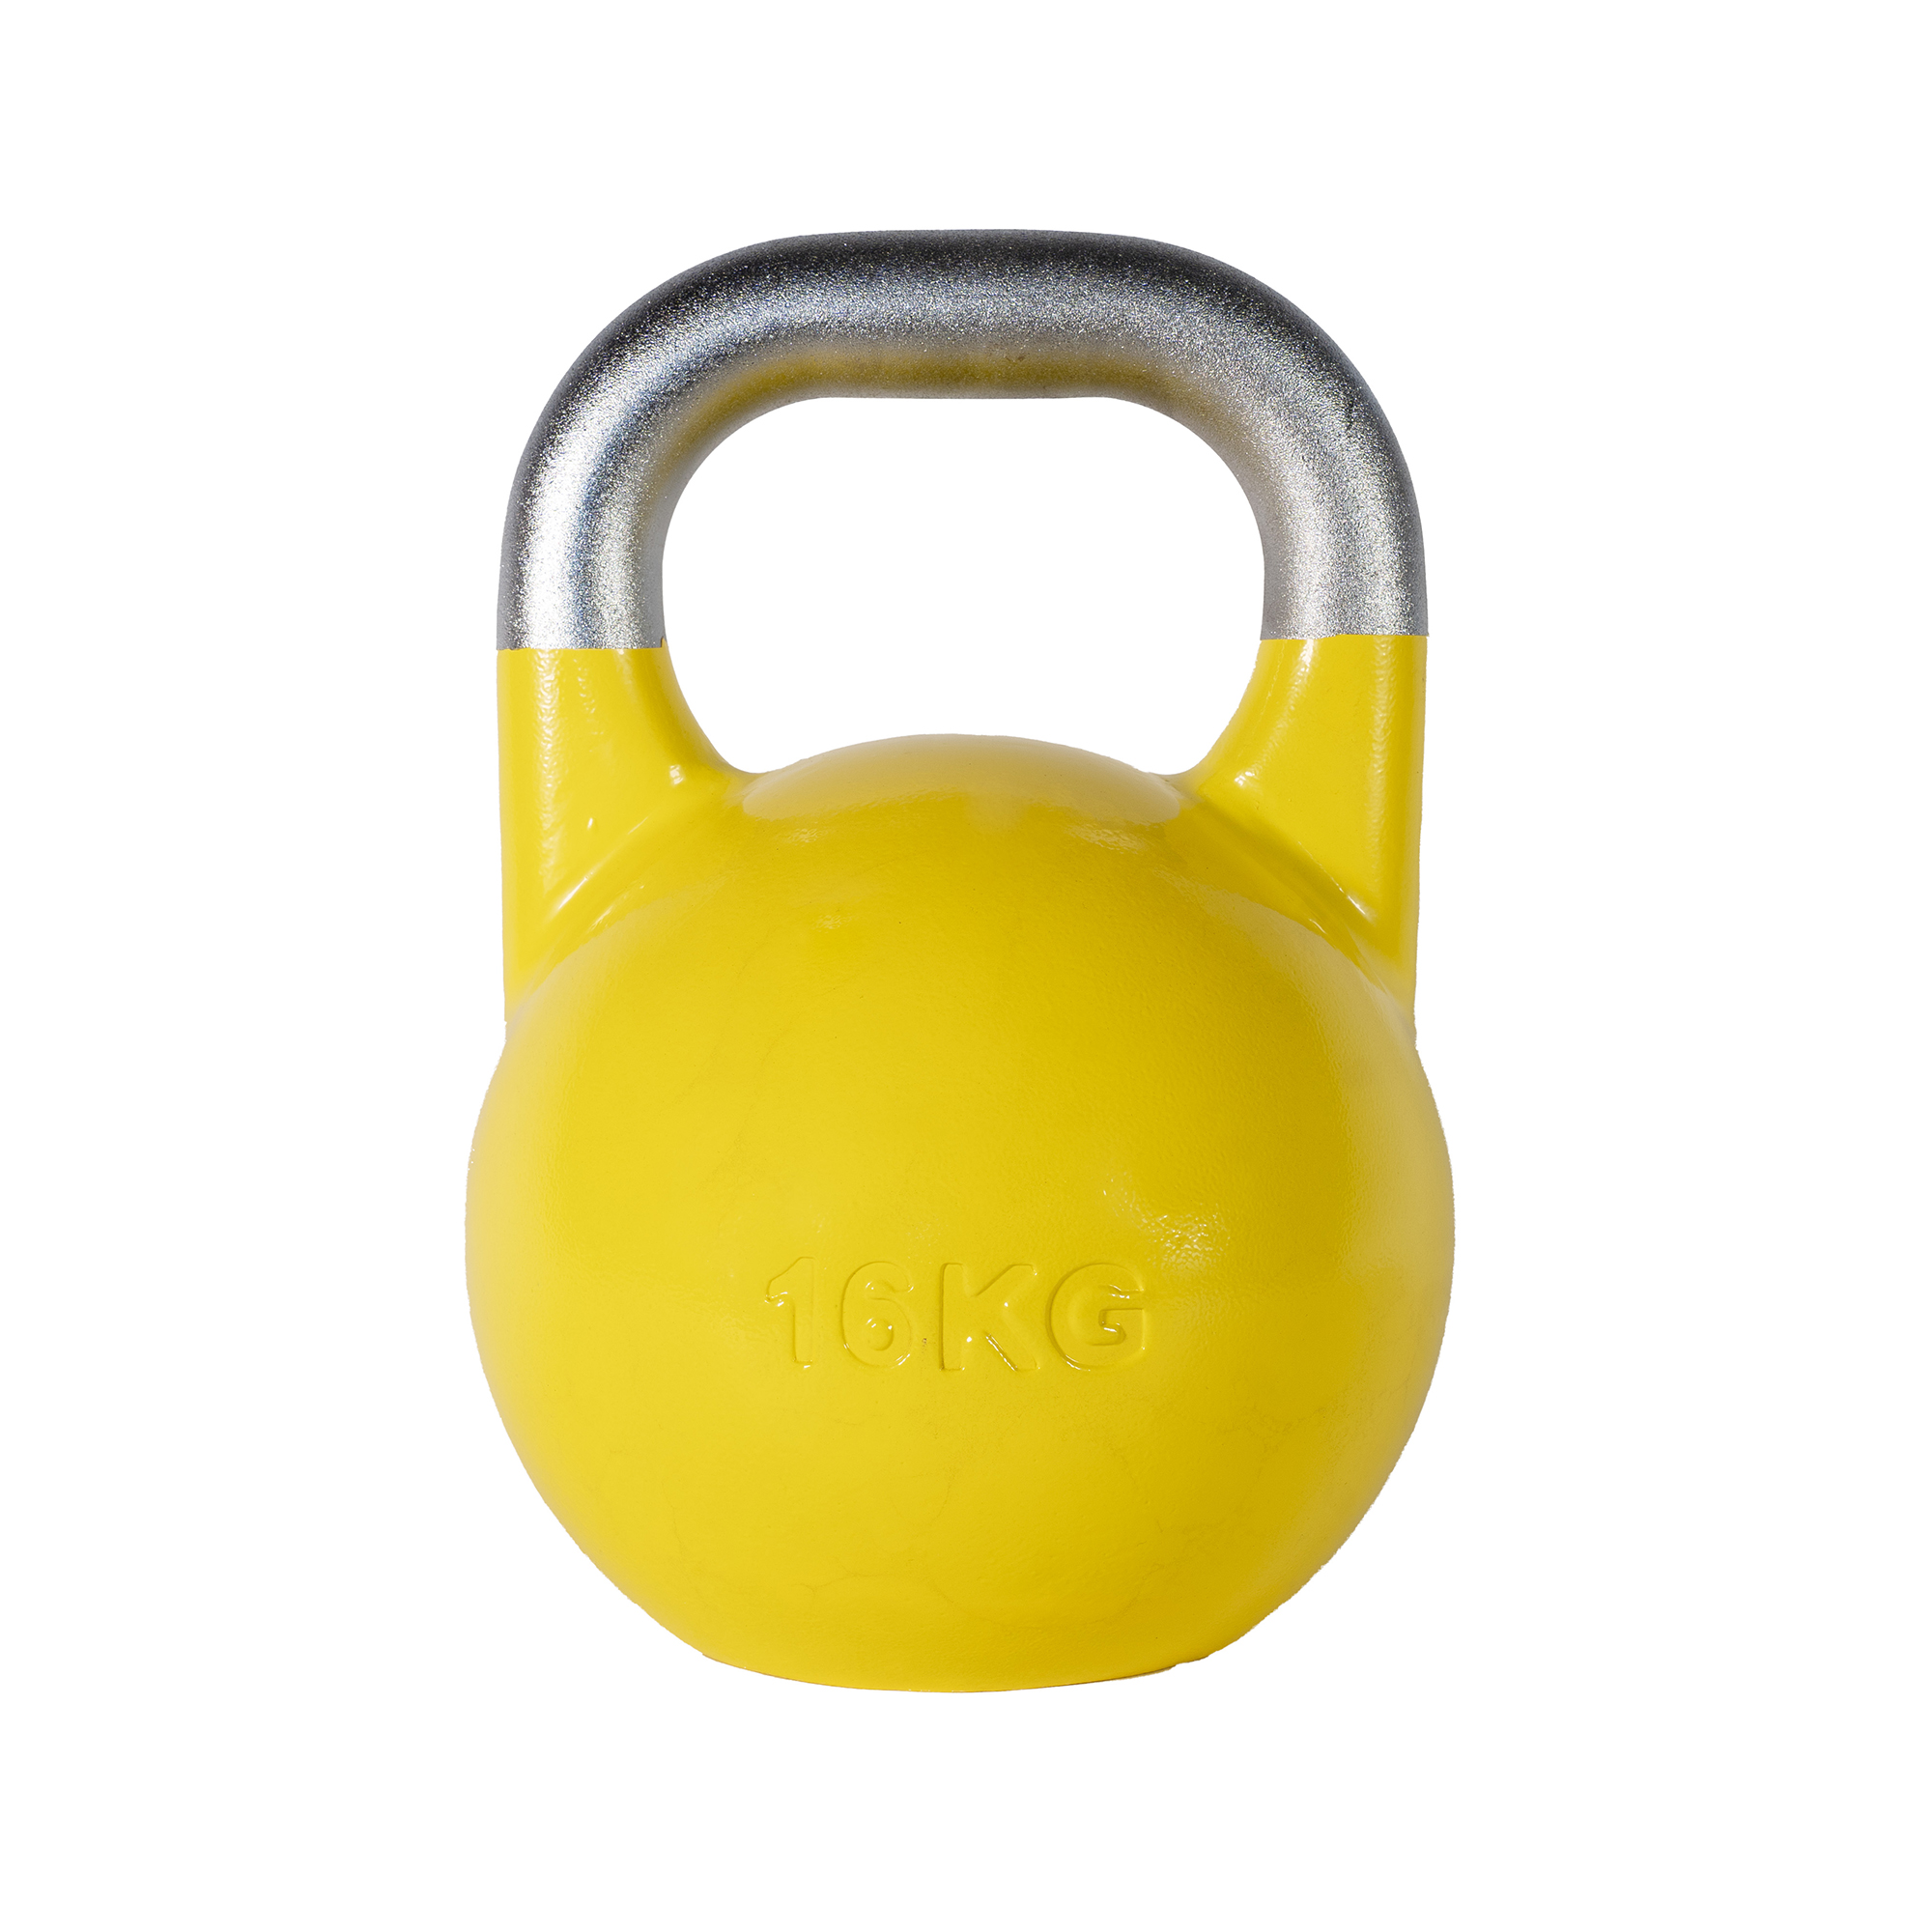 Brug SQ&SN Competition Kettlebell (16 kg) i støbejern. Udstyr til crossfit træning, styrketræning og funktionel træning til en forbedret oplevelse